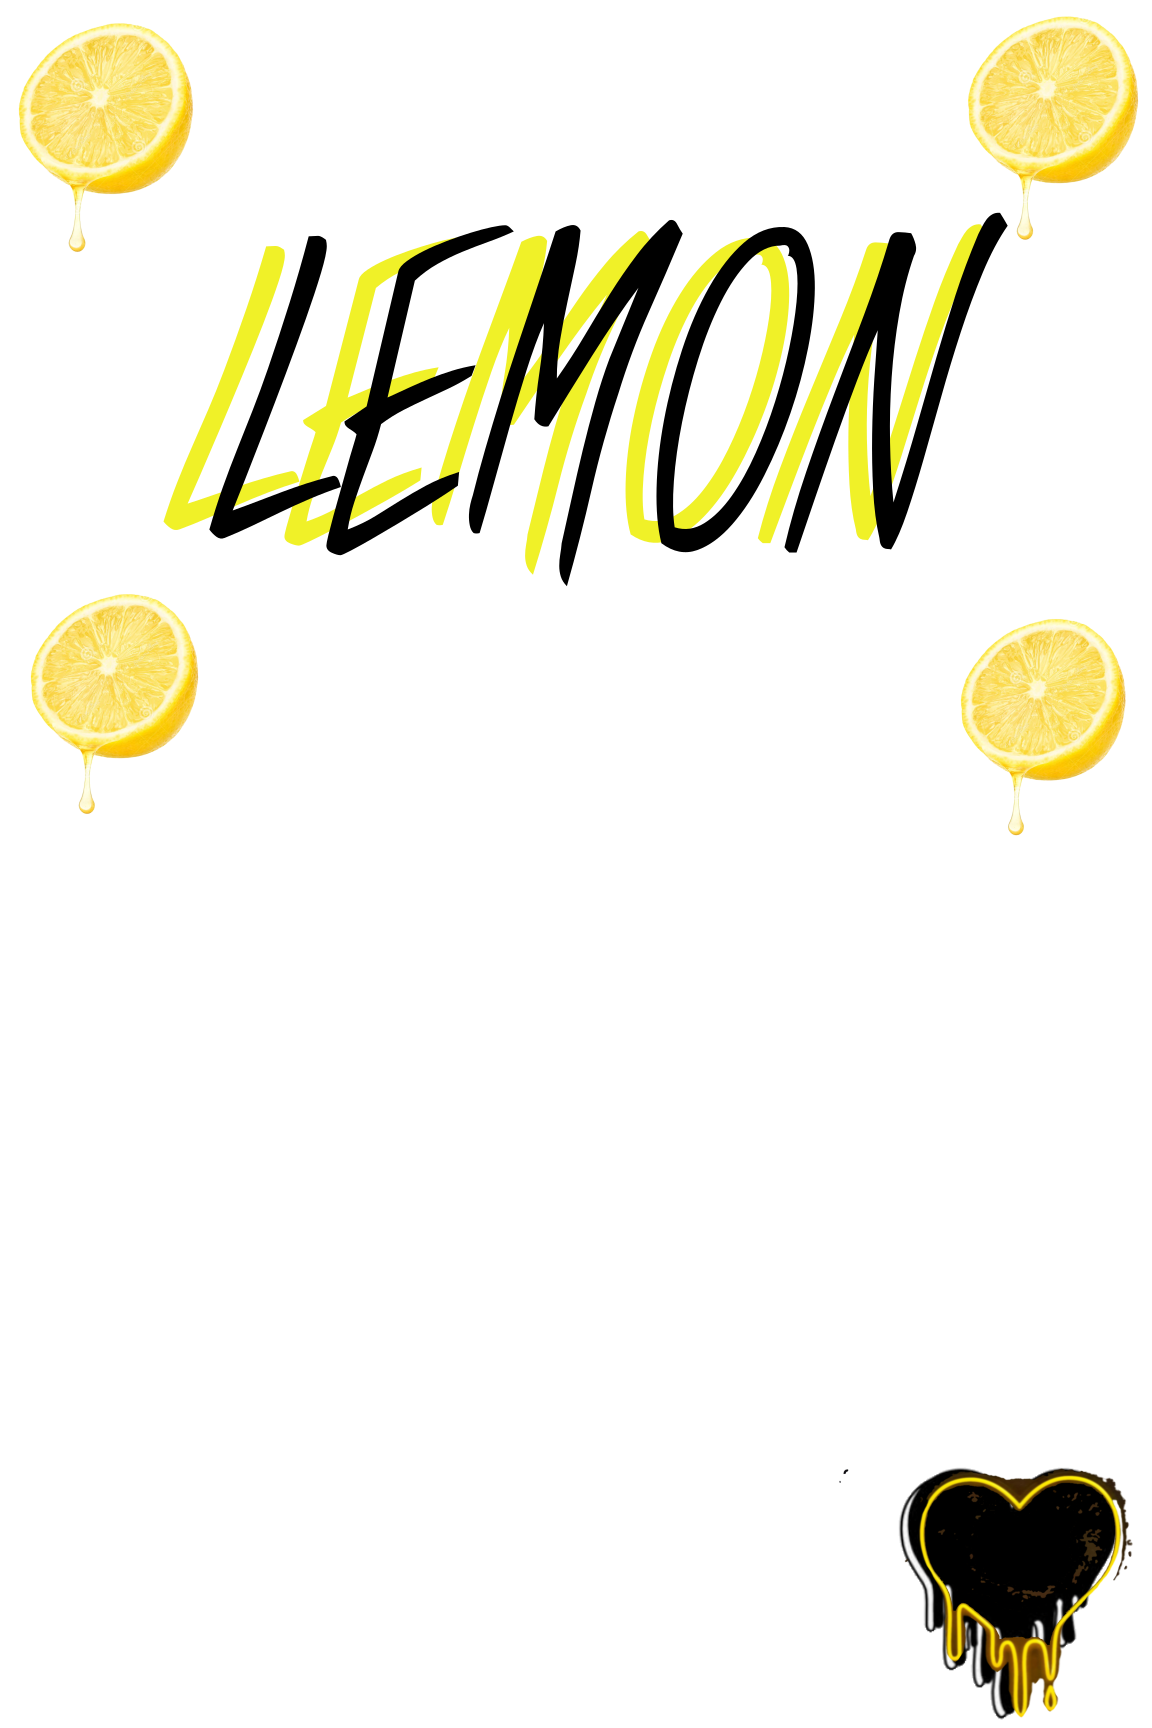 Lemon Longsleeve